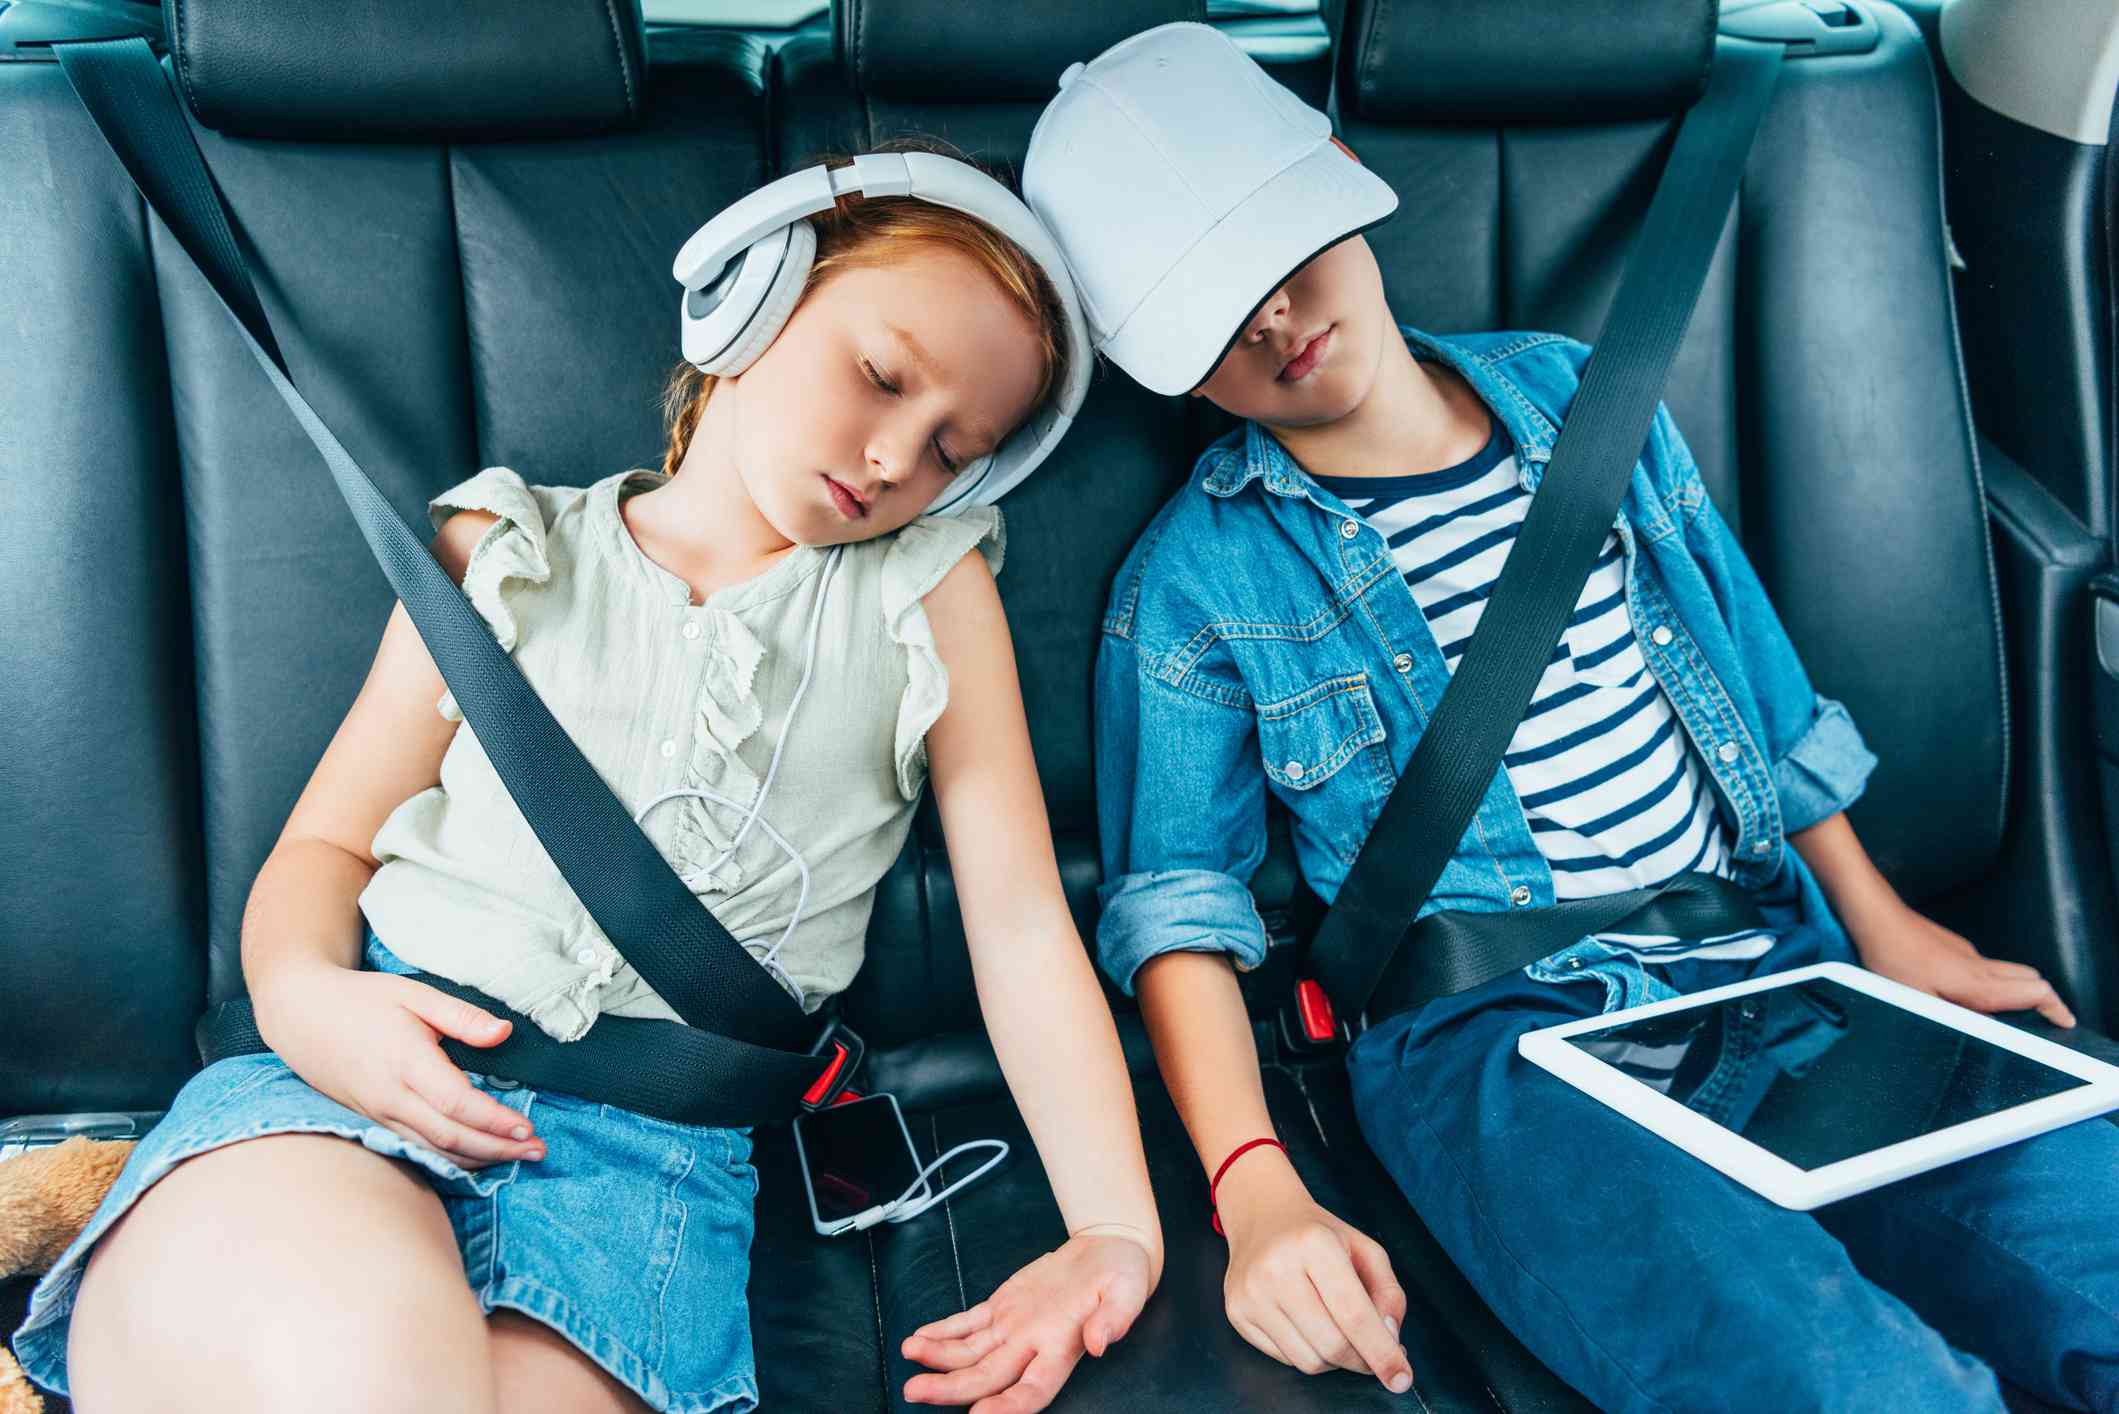 Twee kinderen slapen in de auto met elektronische apparaten die voor schoolwerk kunnen worden gebruikt. 